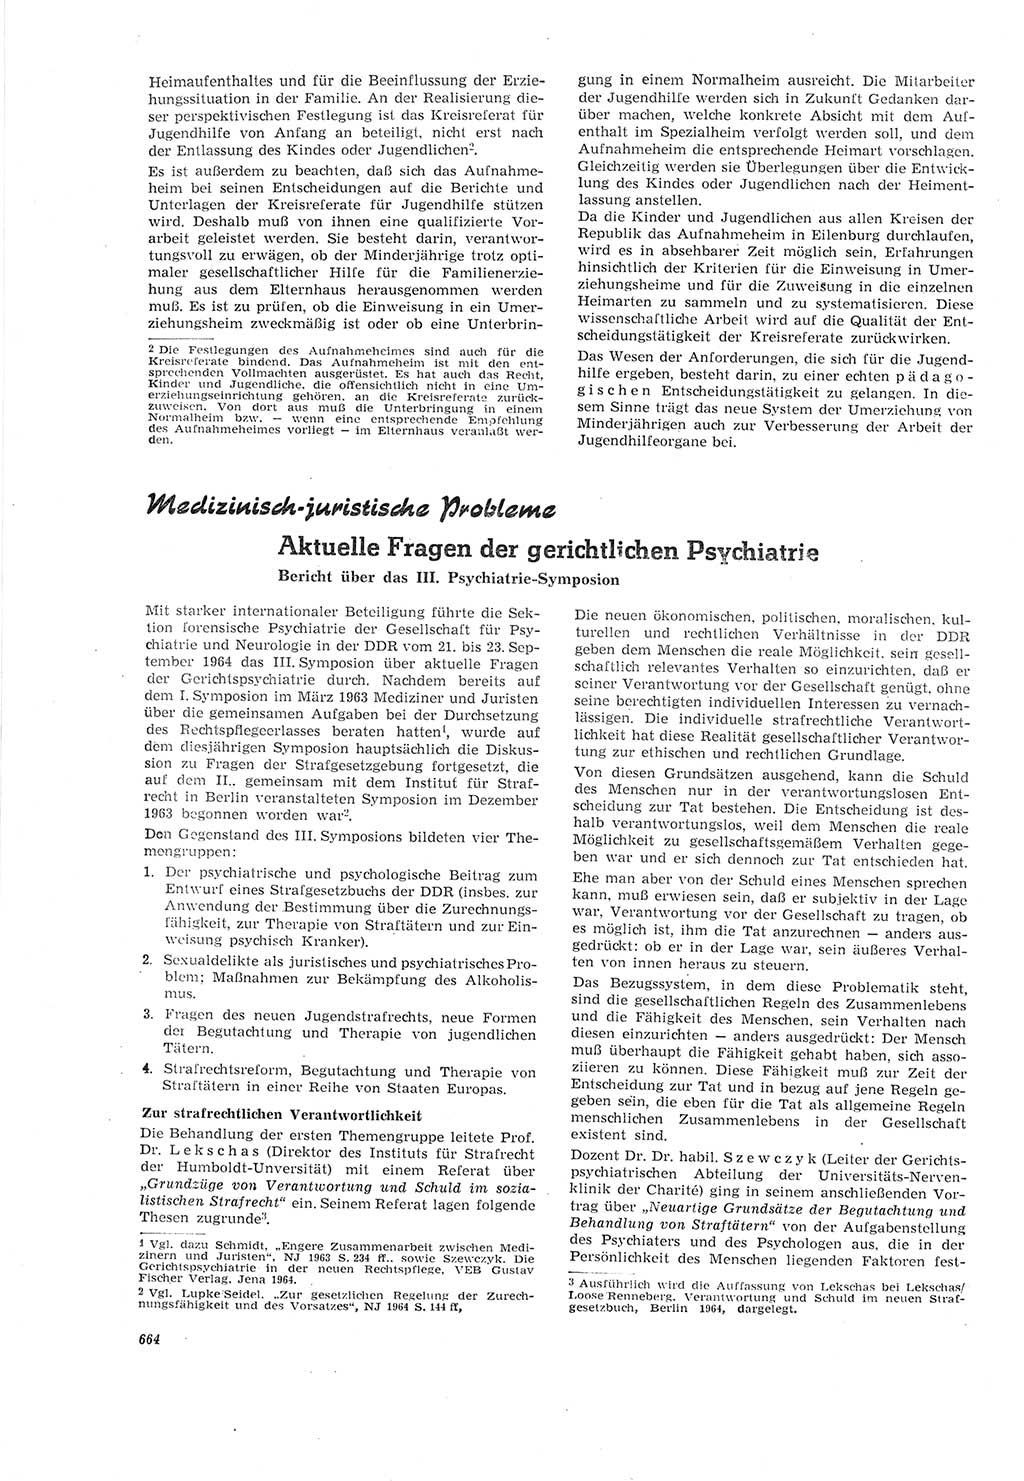 Neue Justiz (NJ), Zeitschrift für Recht und Rechtswissenschaft [Deutsche Demokratische Republik (DDR)], 18. Jahrgang 1964, Seite 664 (NJ DDR 1964, S. 664)